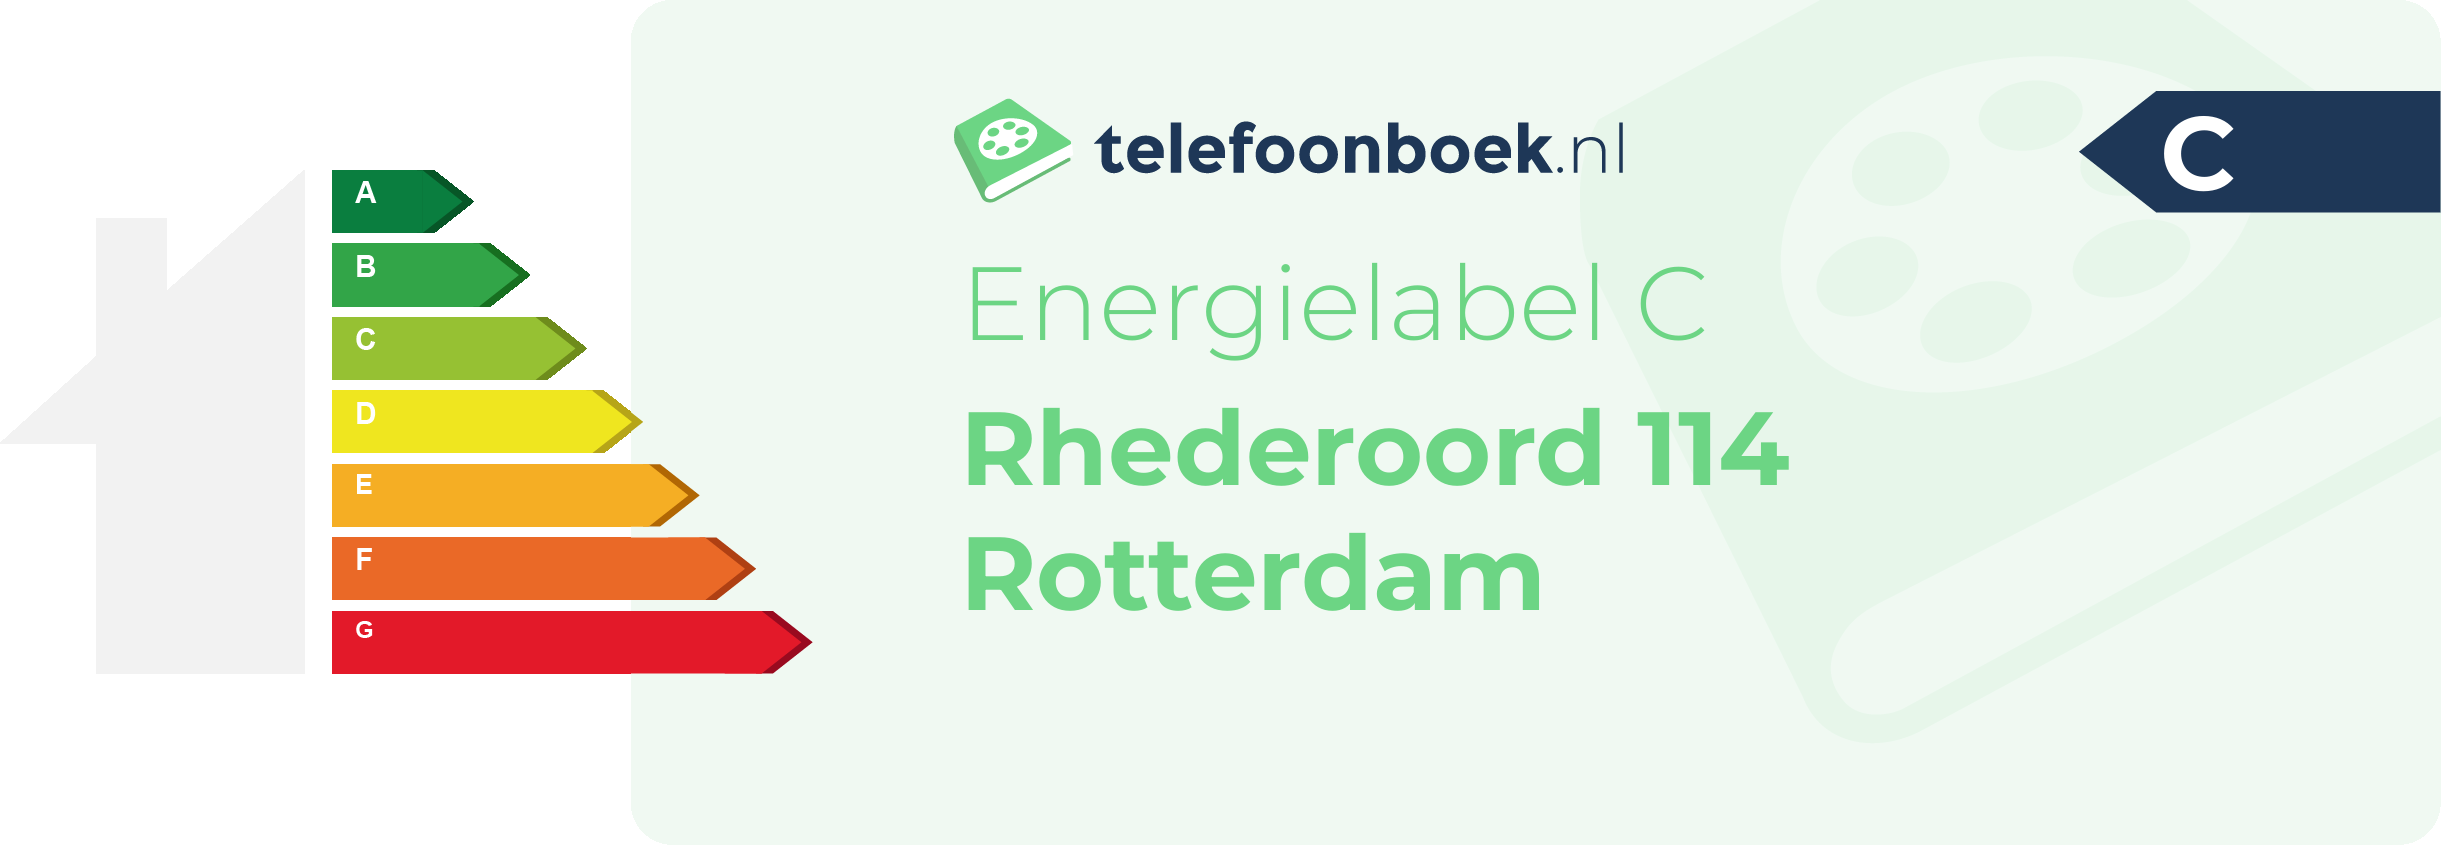 Energielabel Rhederoord 114 Rotterdam